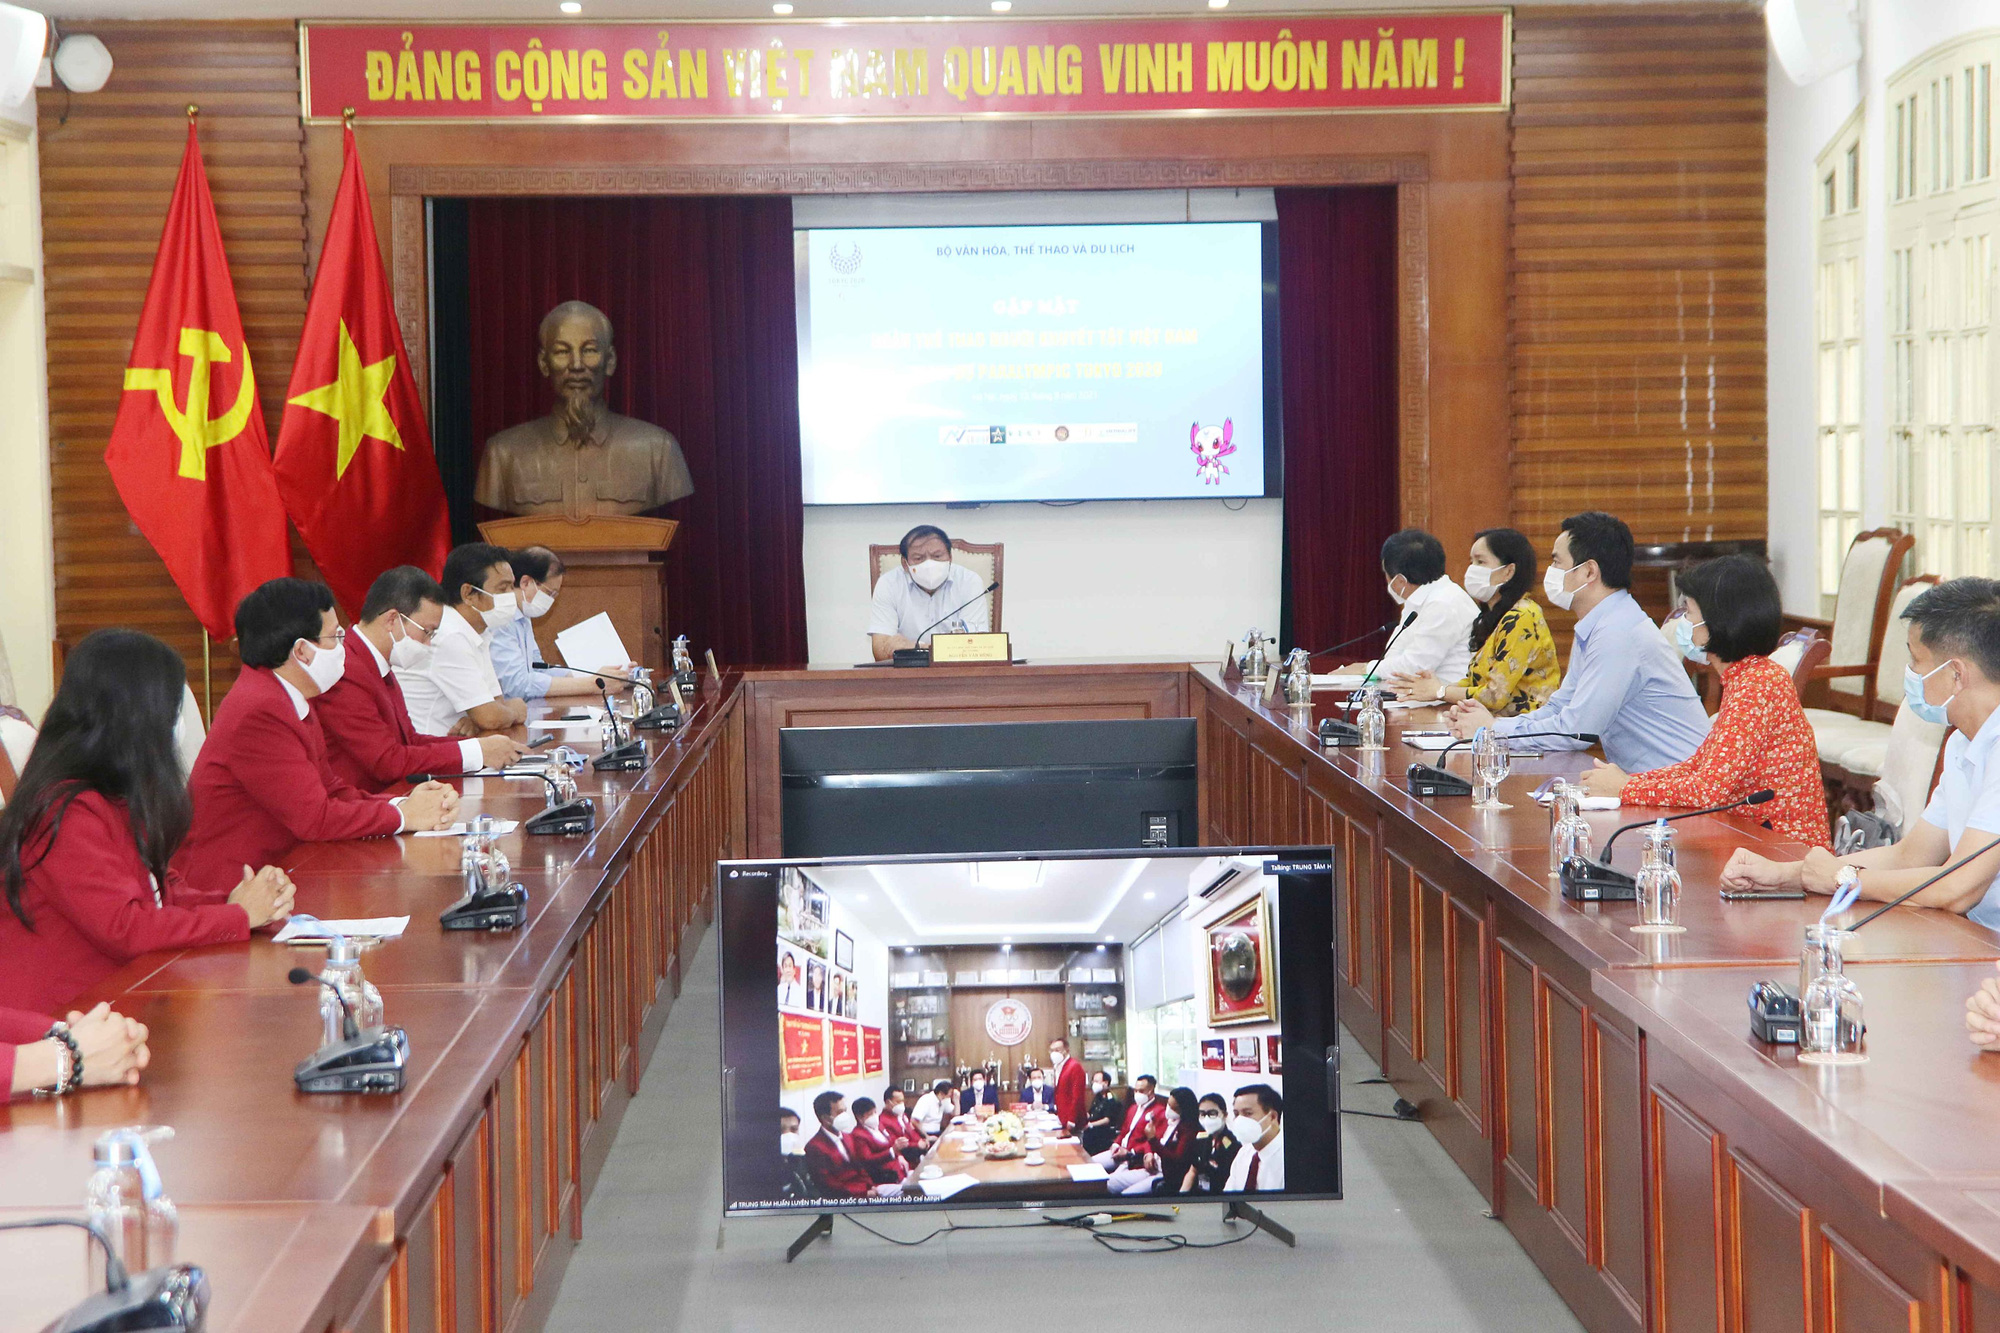 Bộ trưởng Nguyễn Văn Hùng: "Các VĐV người khuyết tật phải thi đấu bình tĩnh, tự tin với quyết tâm cao nhất, nêu cao hình ảnh của Thể thao Việt Nam" - Ảnh 1.